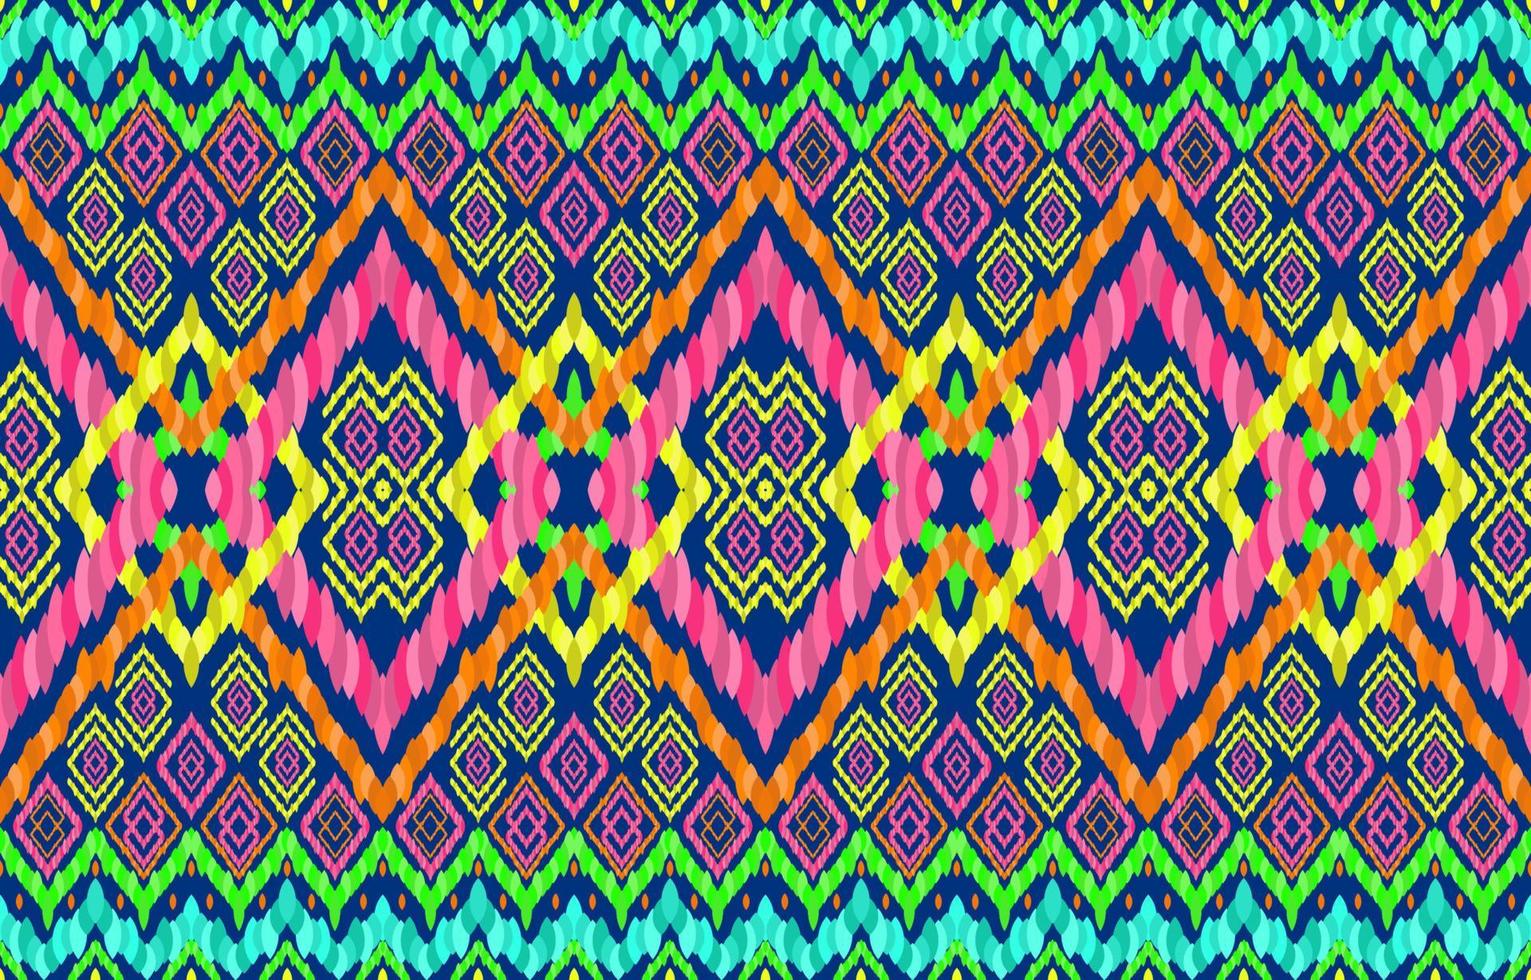 modèles sans couture ikat indien maya africain navajo. ligne géométrique lueur lueur lumineuse fond de couleur néon. style rétro de motif ikat indigène tribal ethnique folklorique. conception pour tapis en tissu d'habillement. vecteur